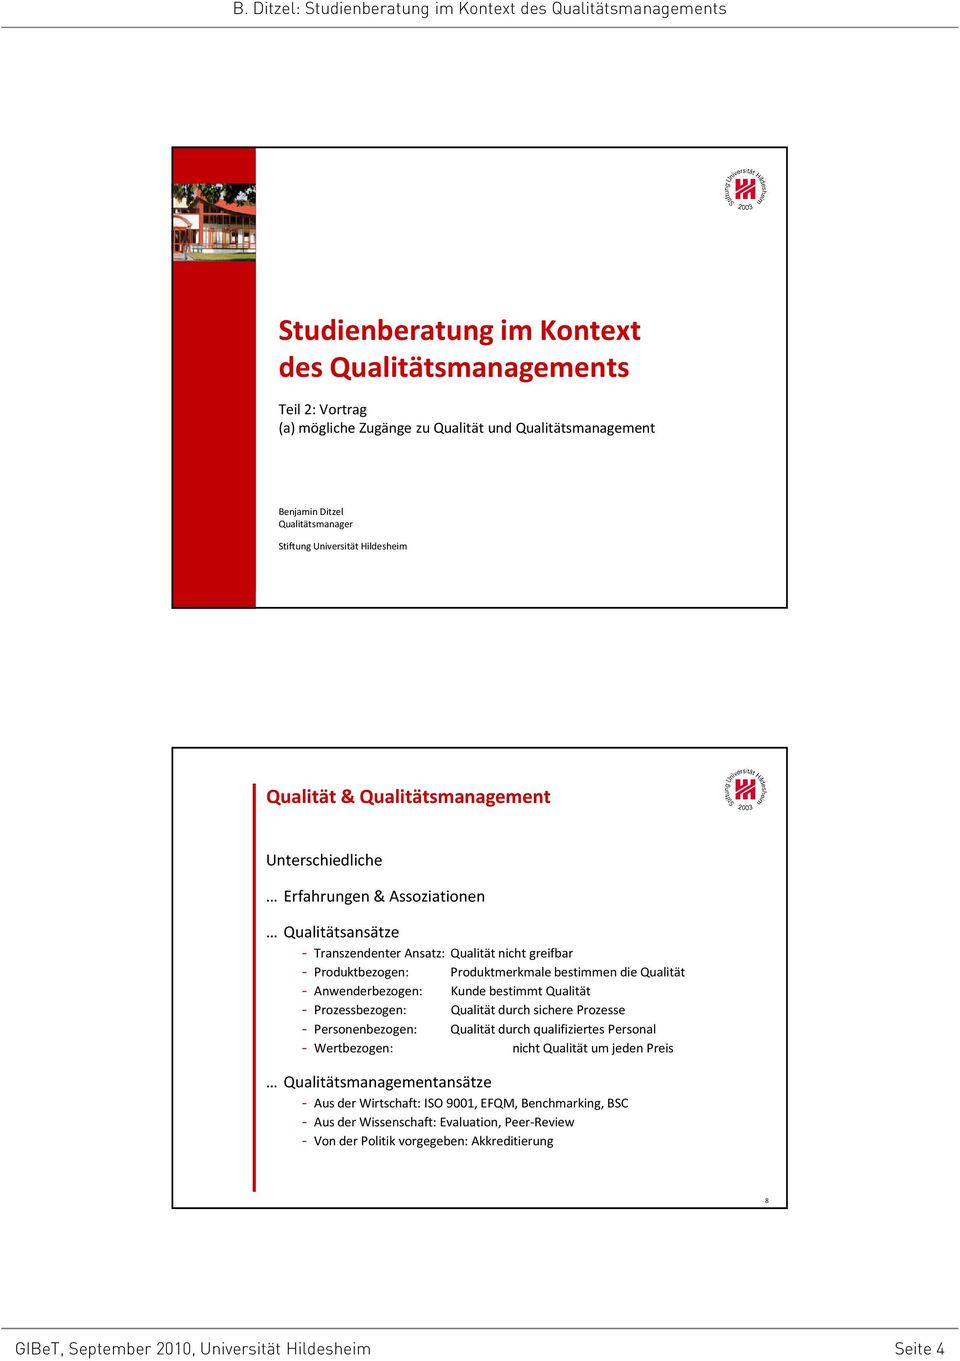 Qualität - Anwenderbezogen: Kunde bestimmt Qualität - Prozessbezogen: Qualität durch sichere Prozesse - Personenbezogen: Qualität durch qualifiziertes Personal - Wertbezogen: nicht